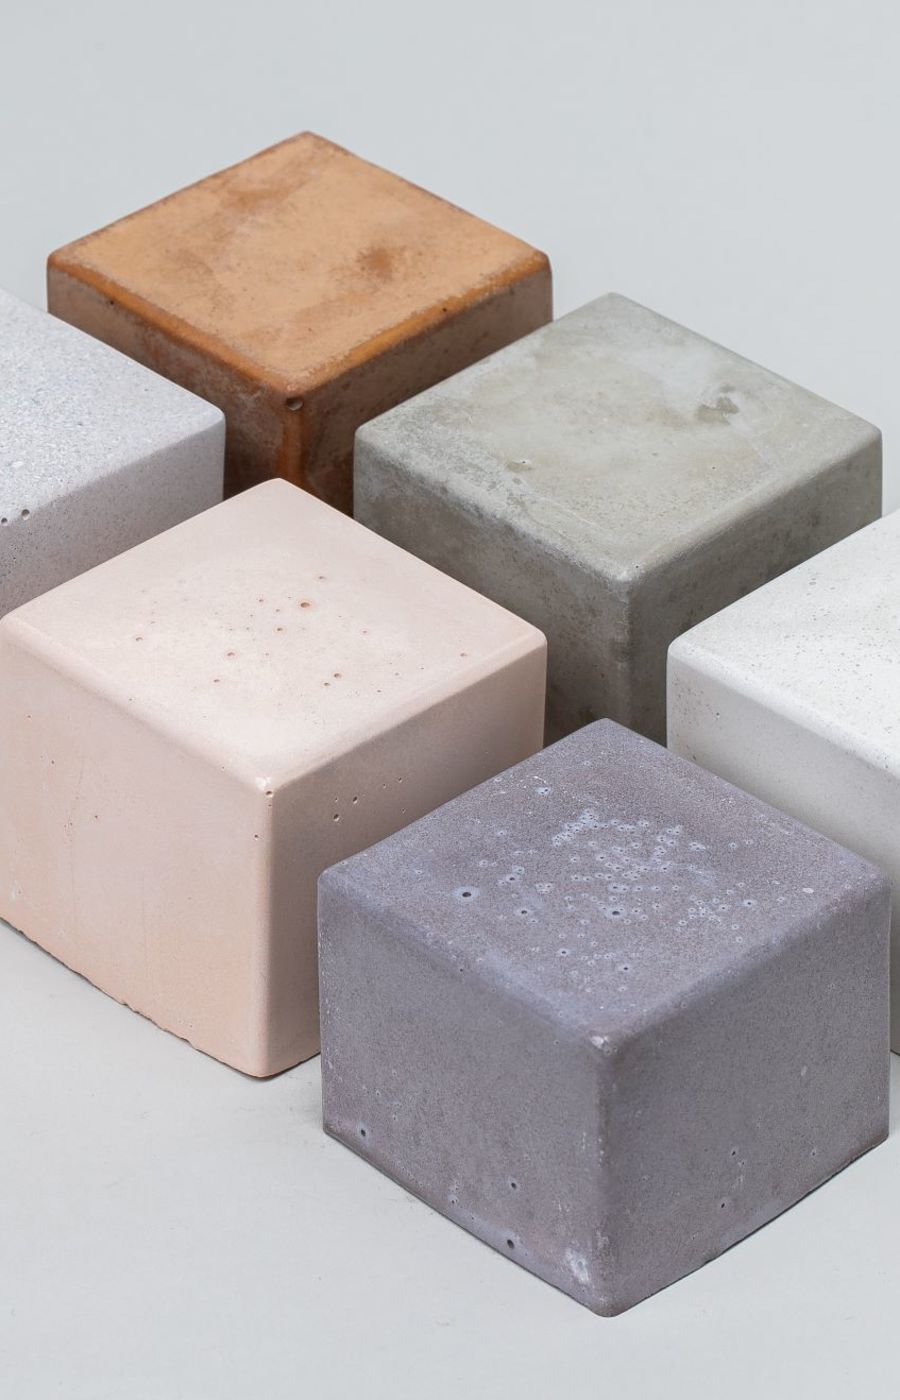 Blocks of ceramics